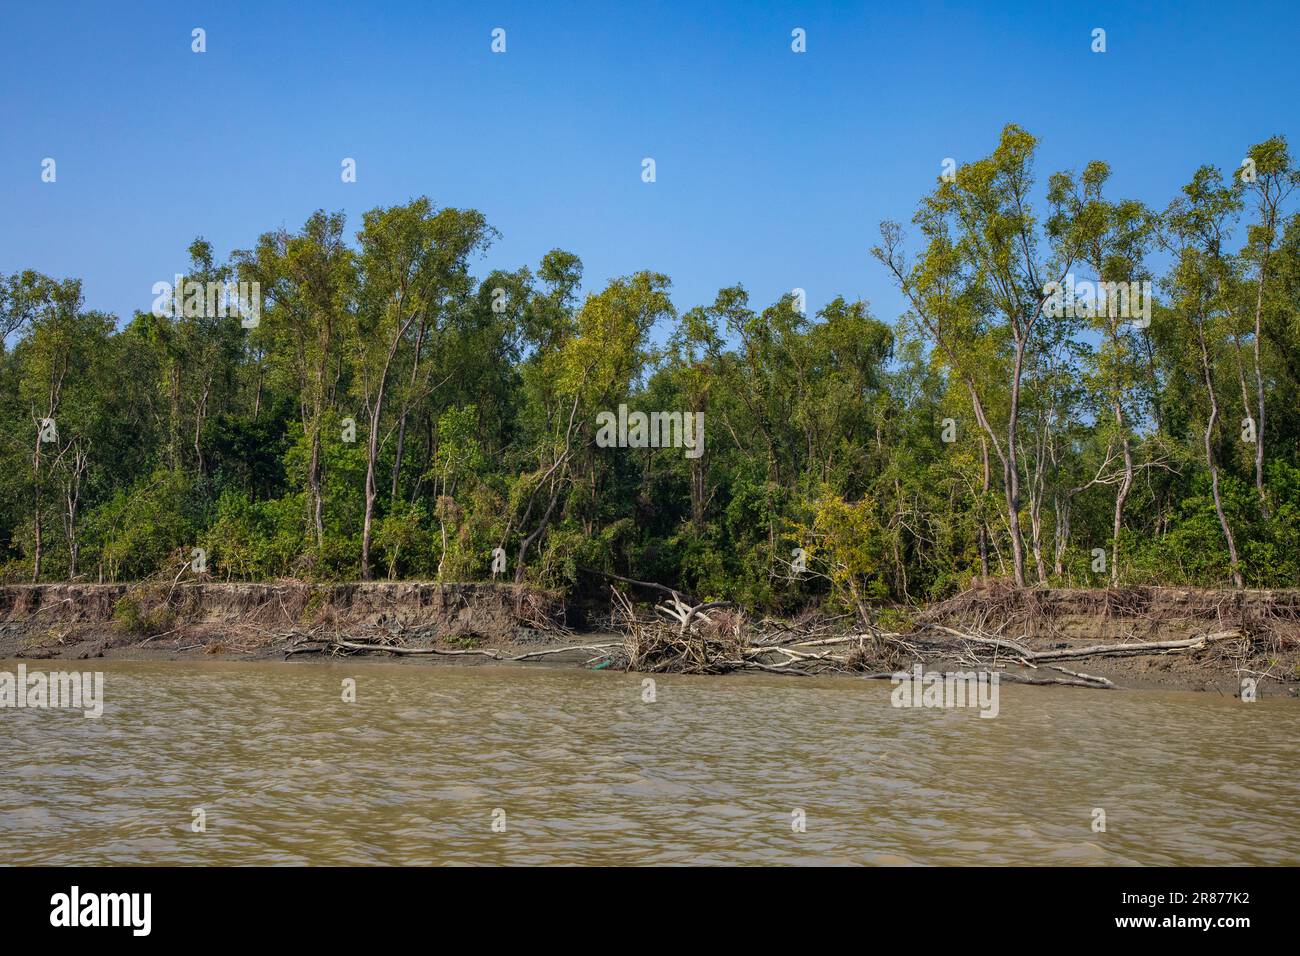 Küstenmangrovenwälder in Dhal Chhar. Dhal Char ist eine der zahlreichen Inseln im Delta des Meghna-Flusses im größeren Ganges-Delta. Bho Stockfoto